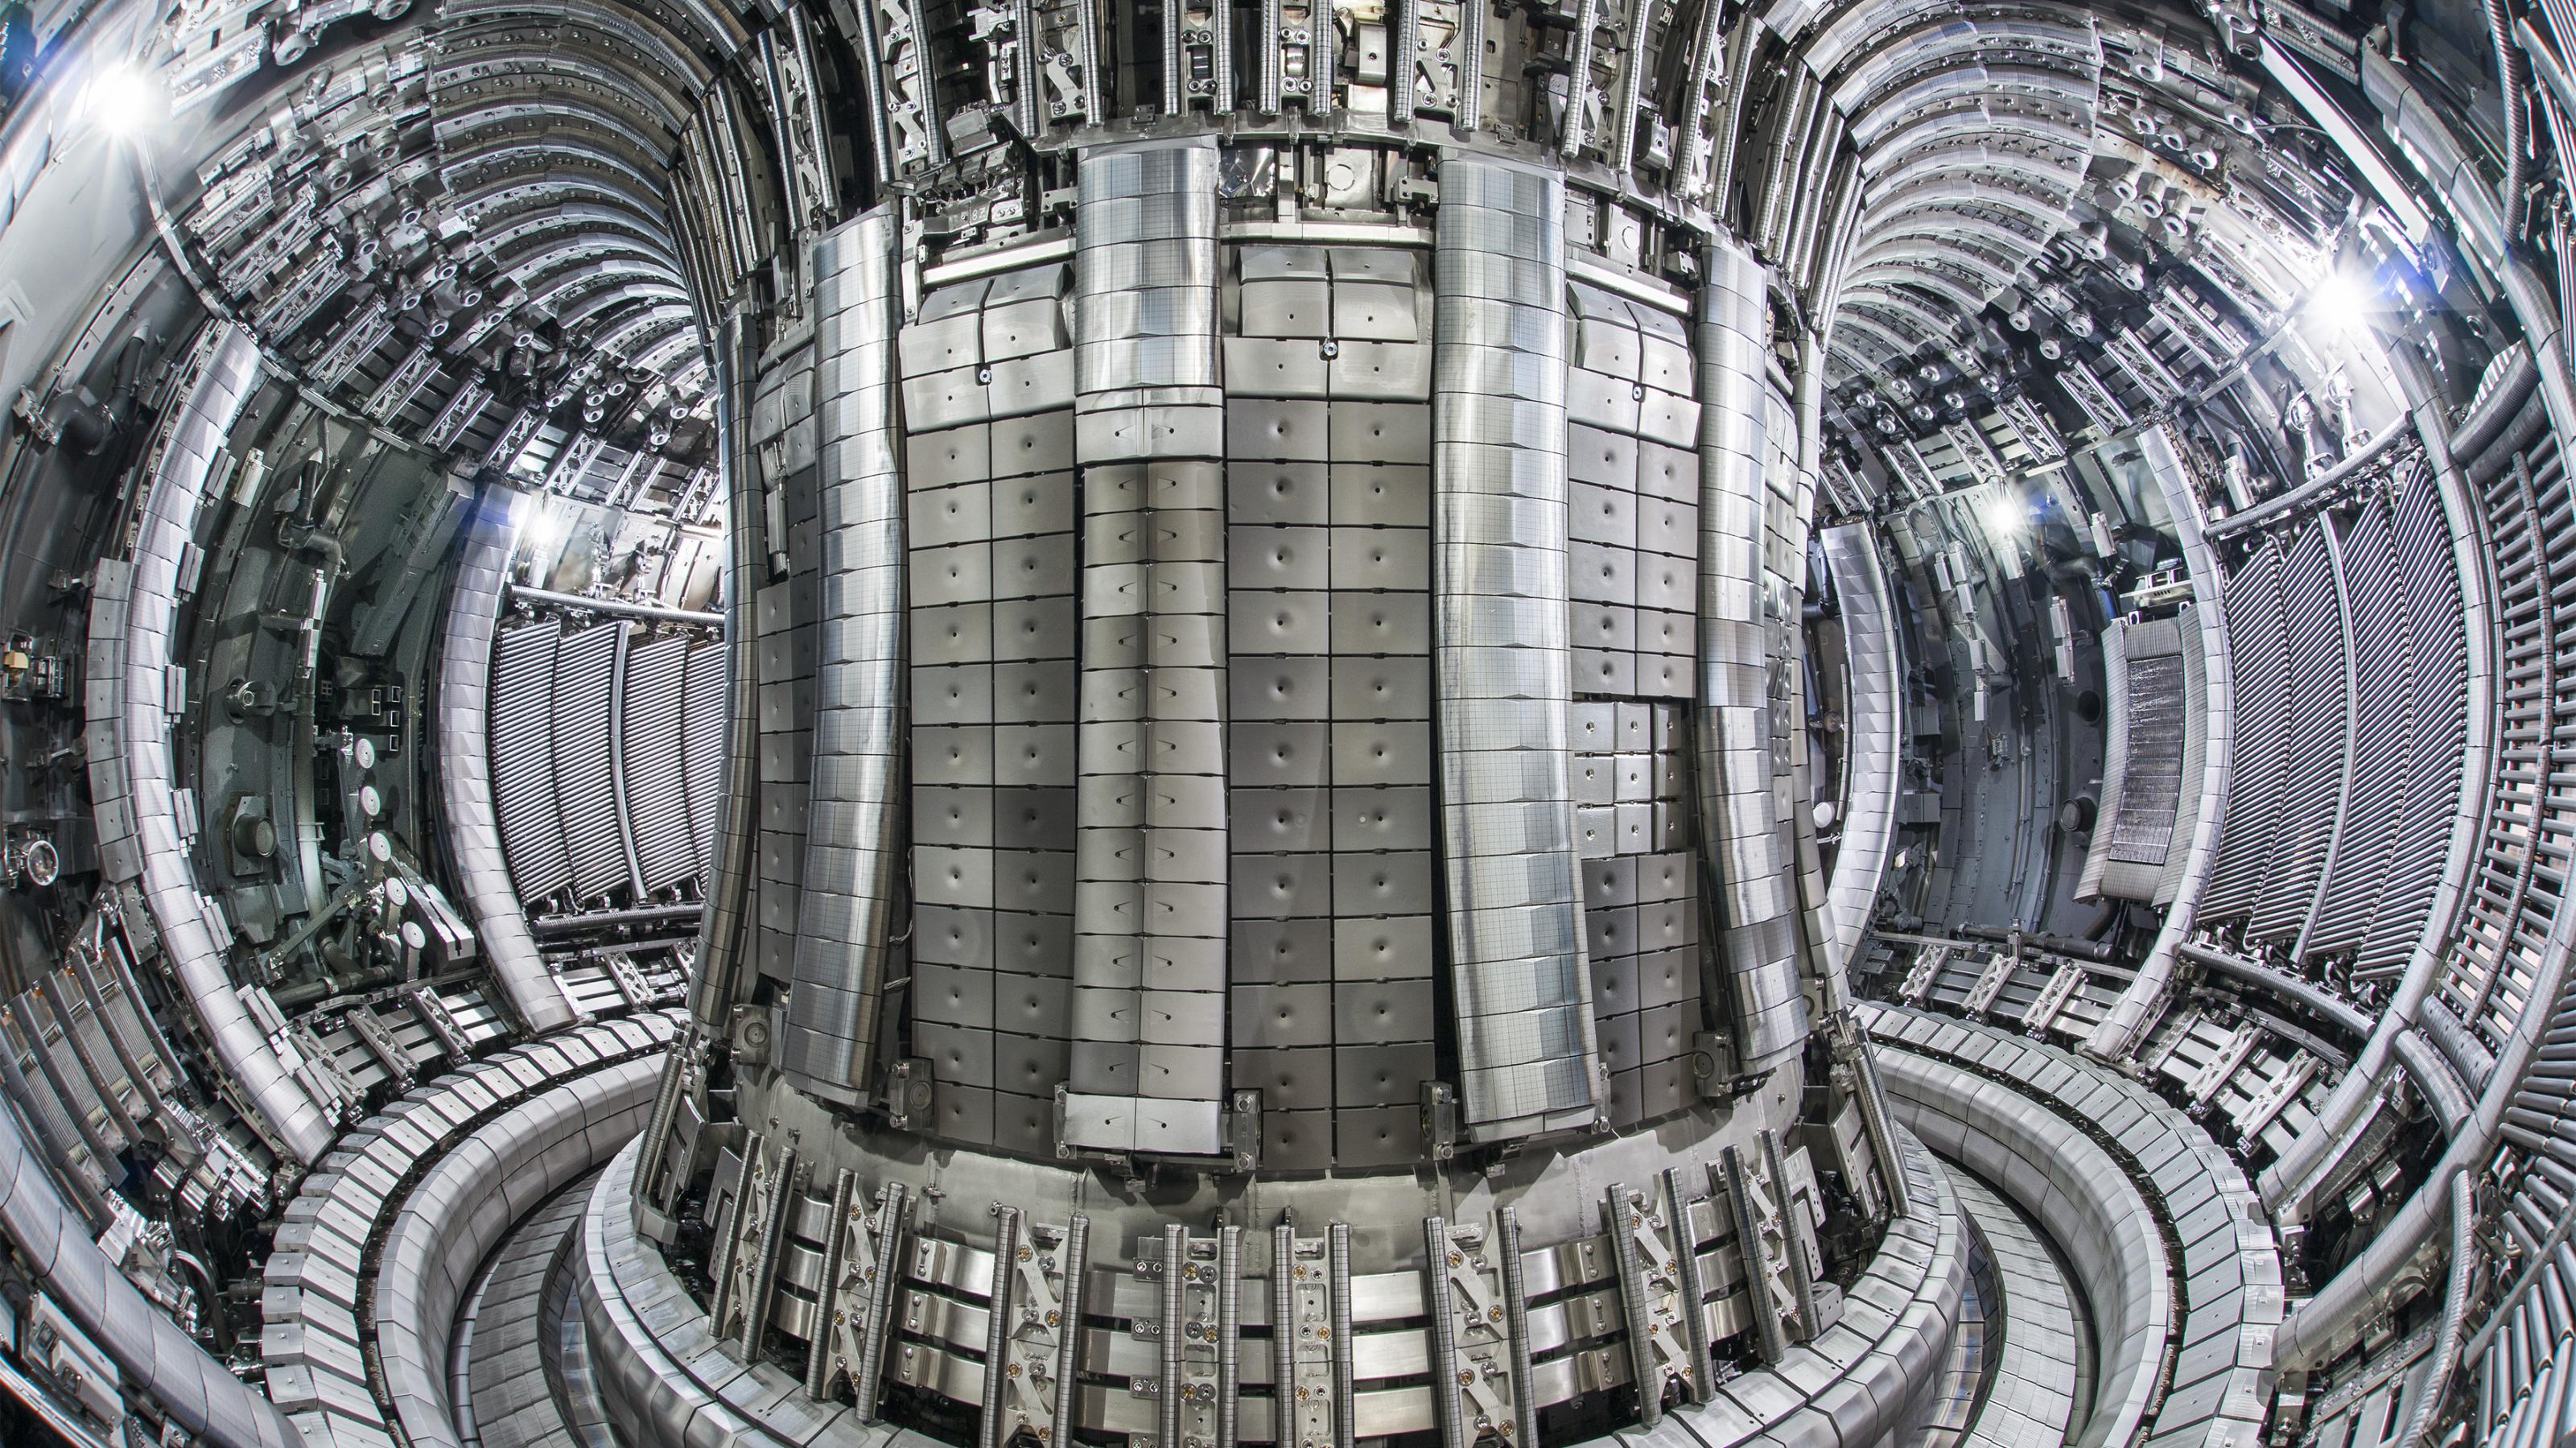 Reaktorkammer des europäischen Fusionsreaktors Jet bei Oxford